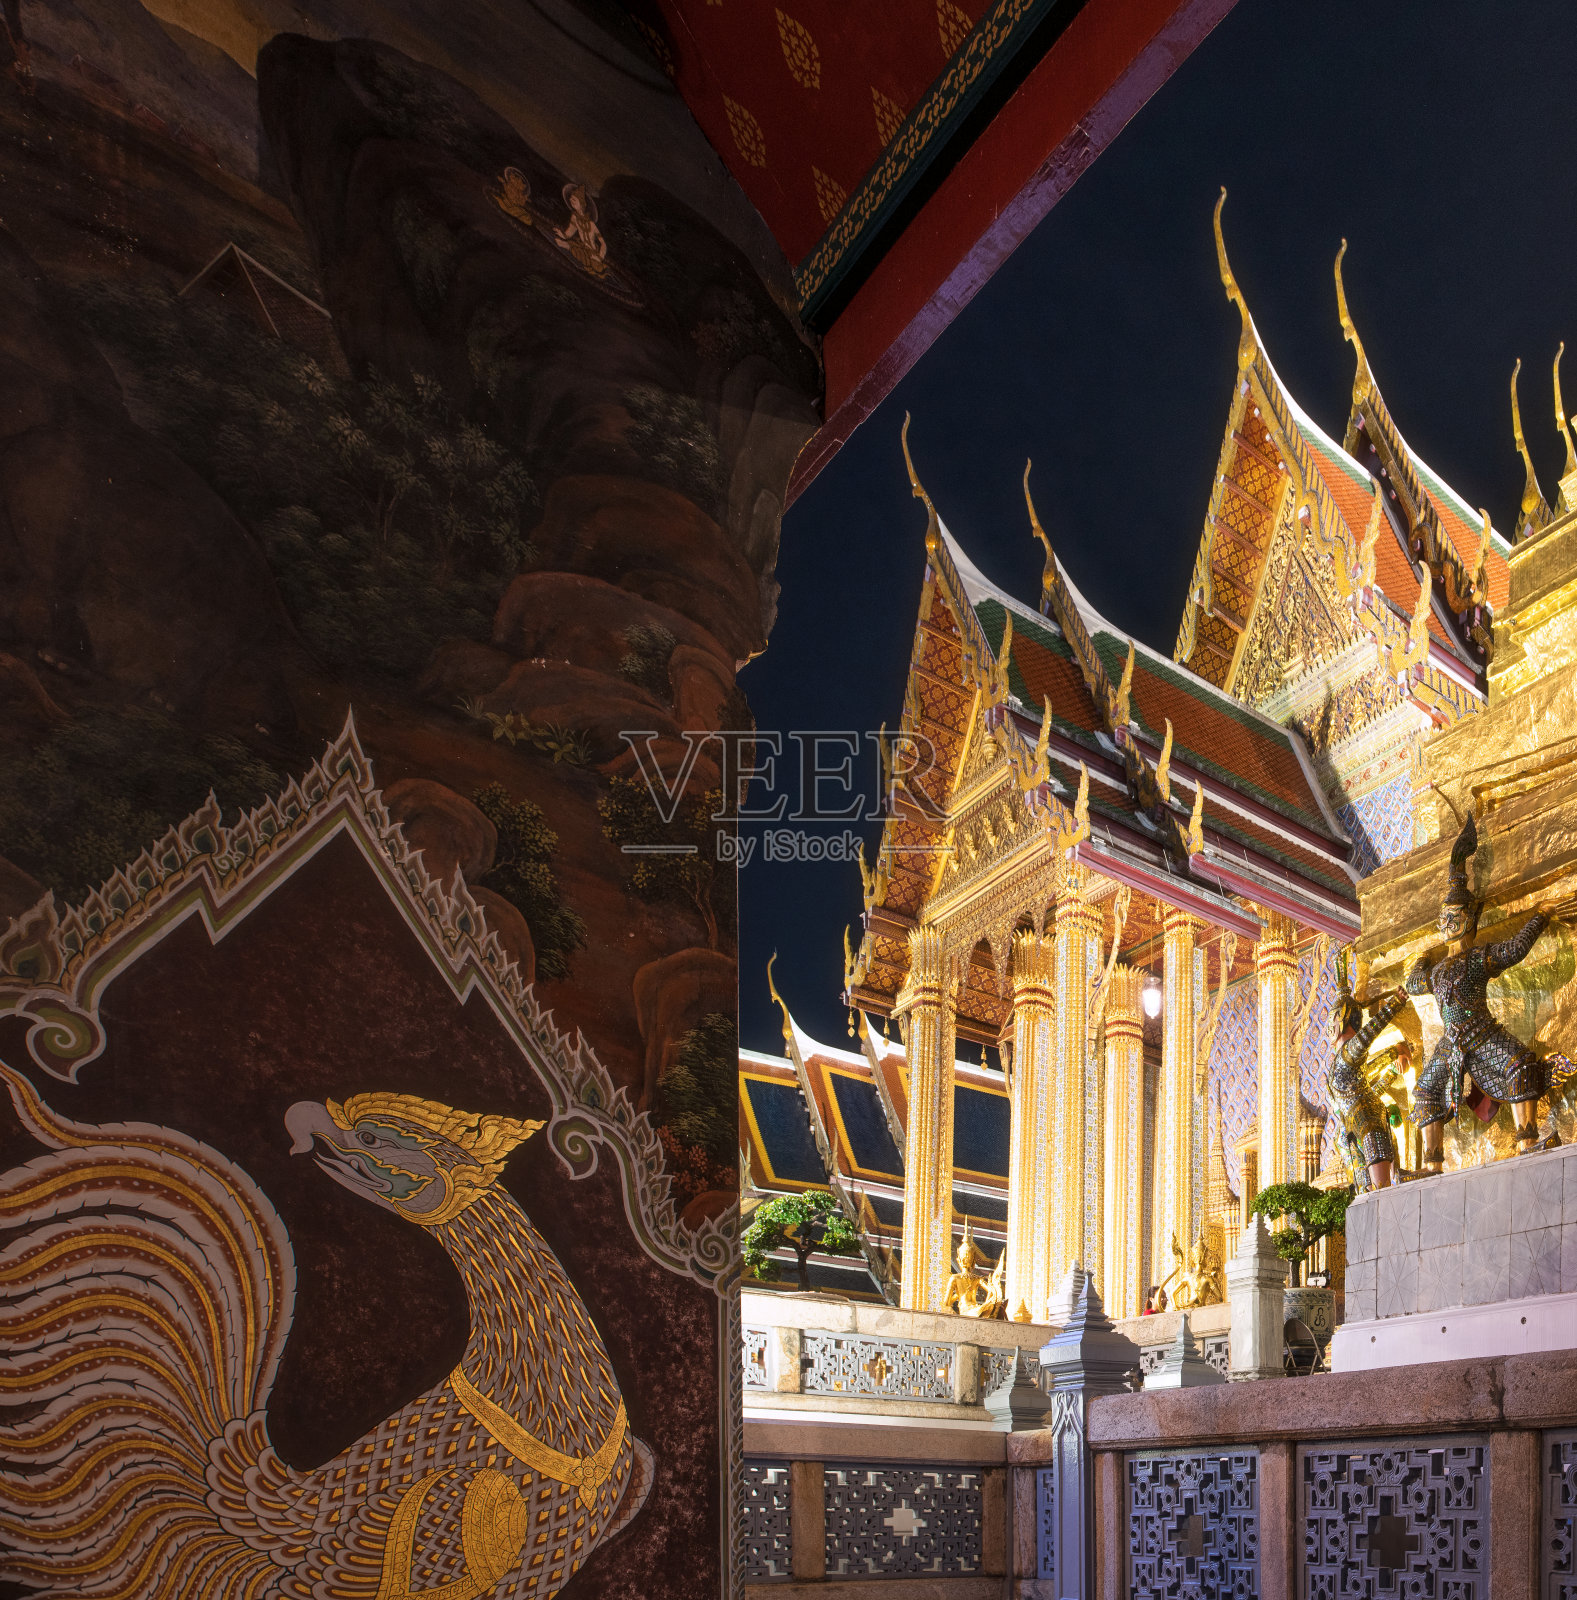 曼谷翡翠佛寺的夜景照片摄影图片